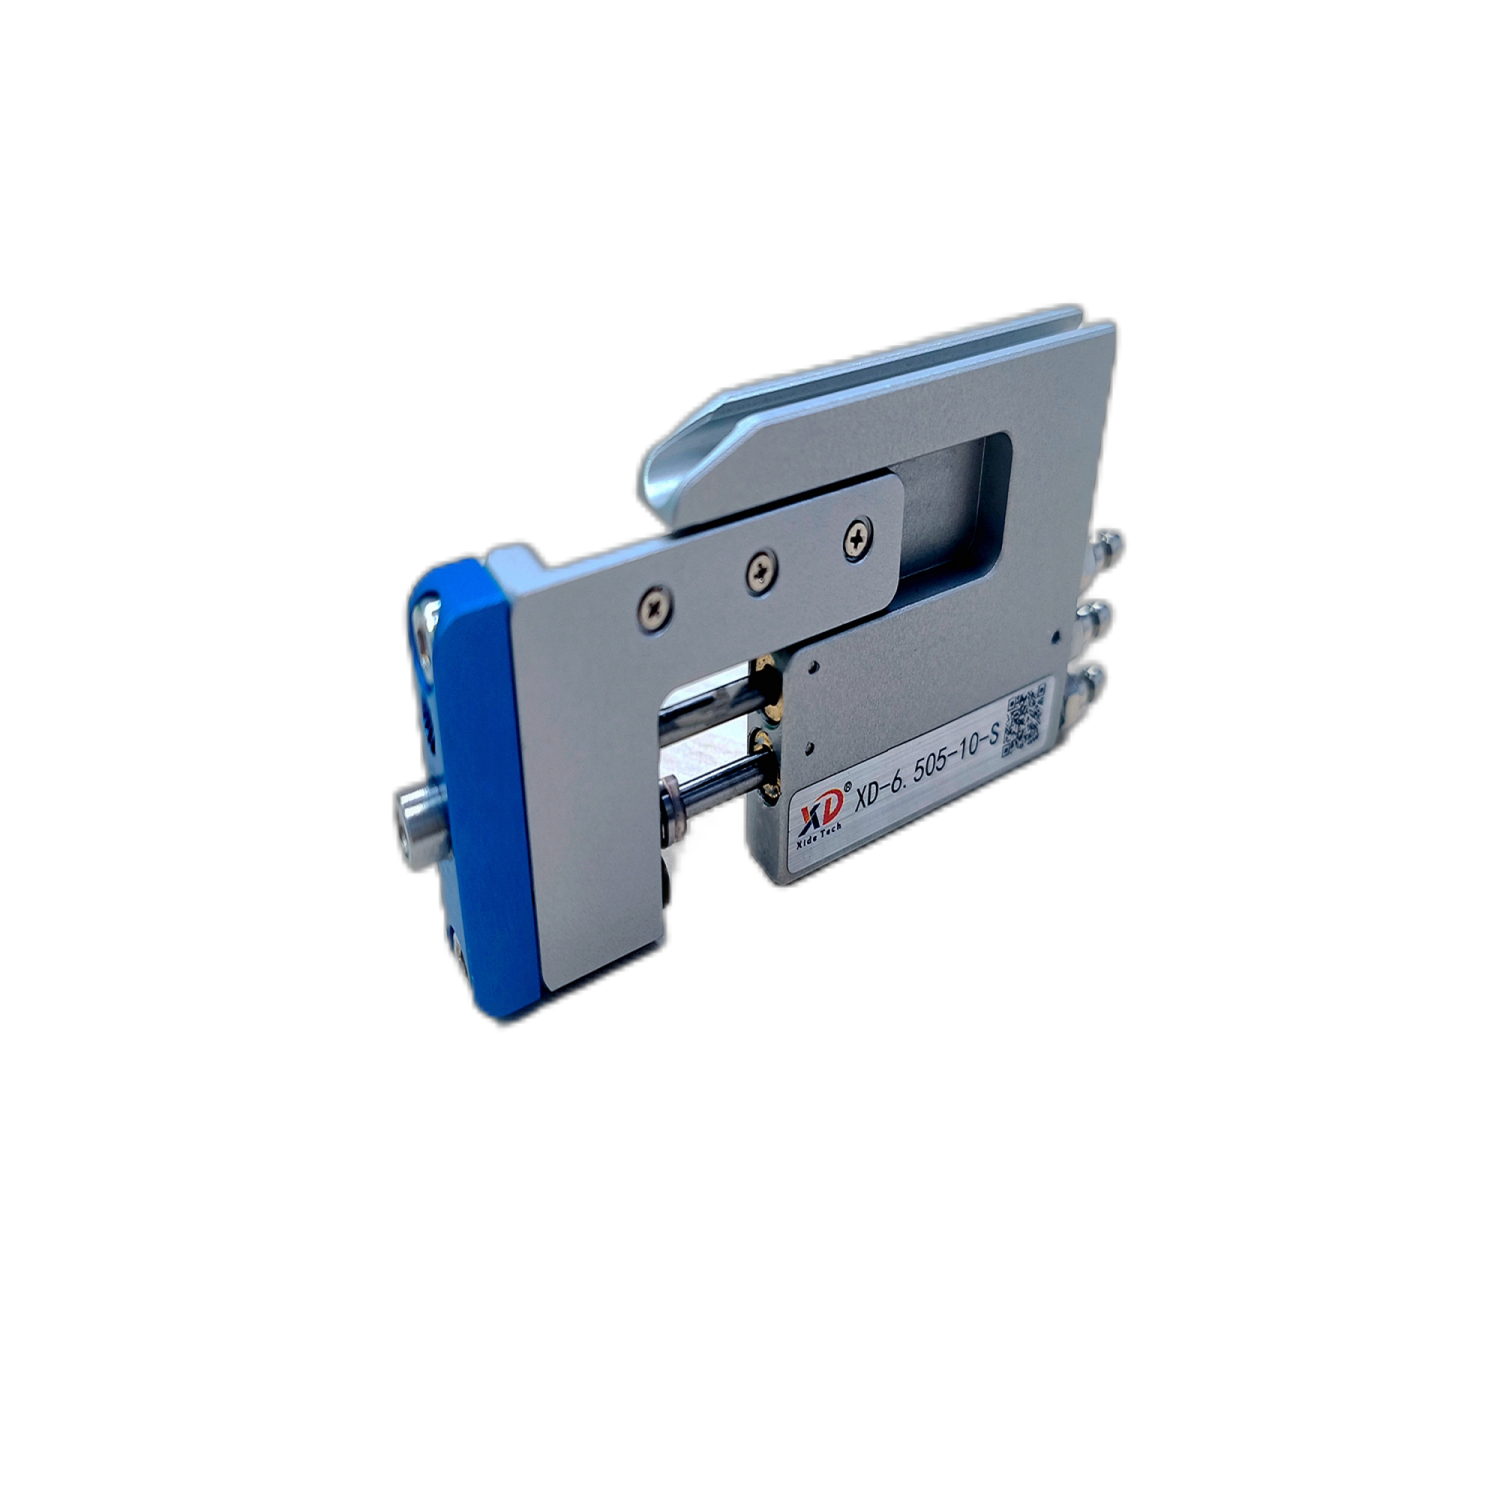  磁感應超薄氣缸 卡片氣缸 XD-6.505-10-S 刀片氣缸